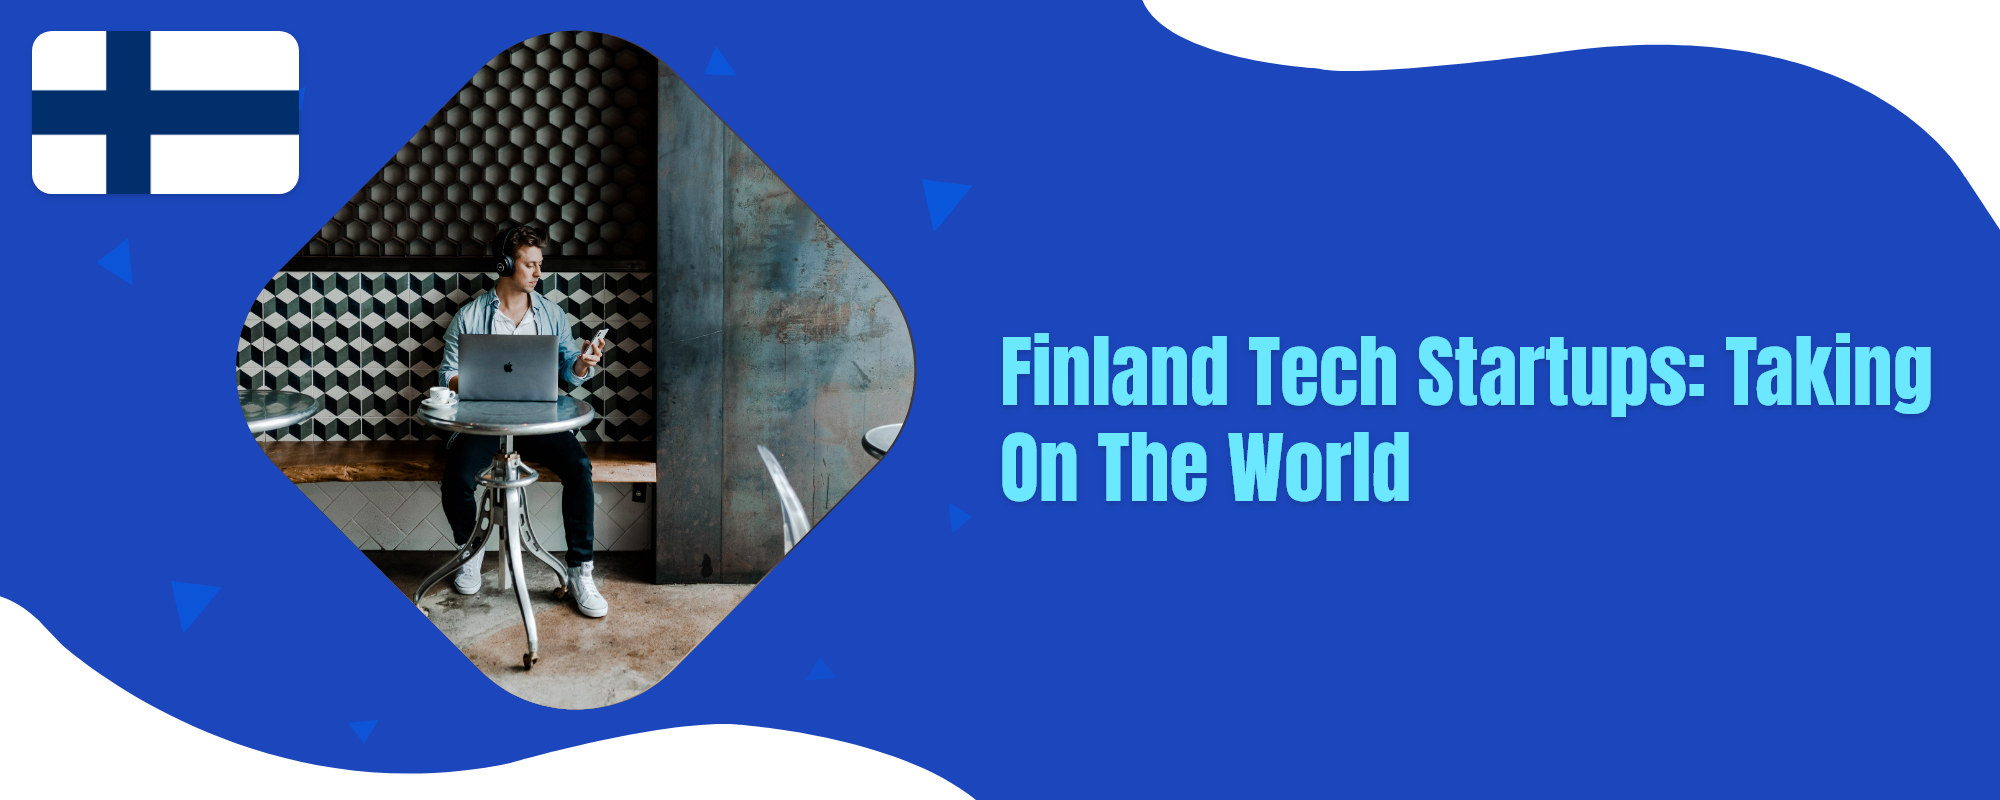 Finland tech startups